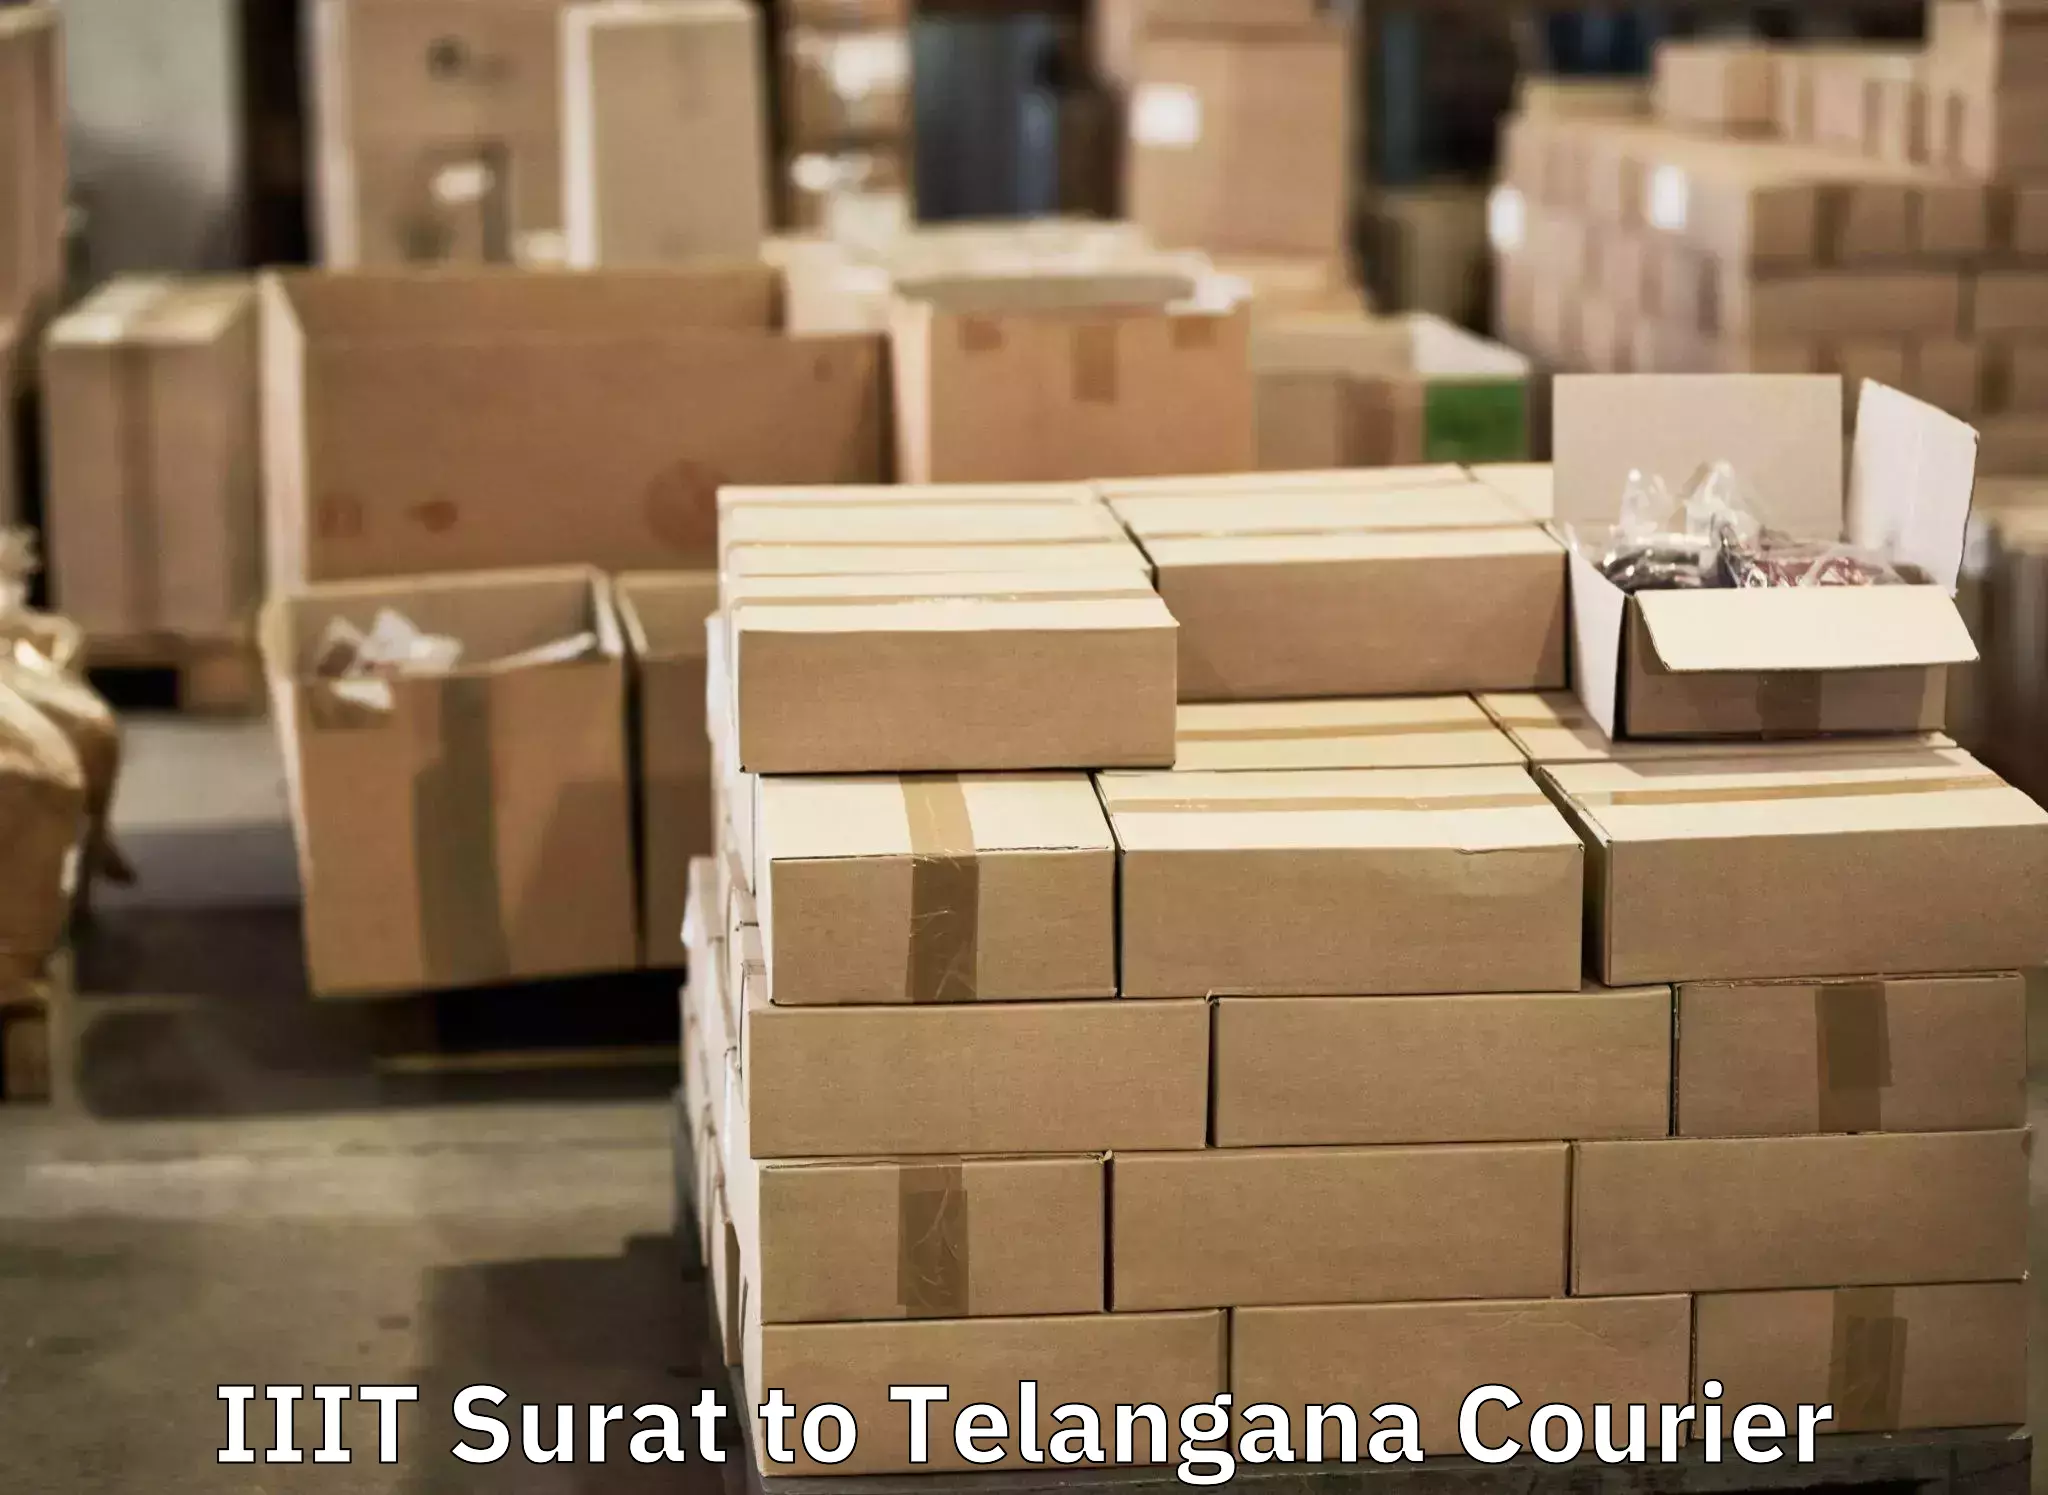 Baggage transport updates IIIT Surat to Dahegaon